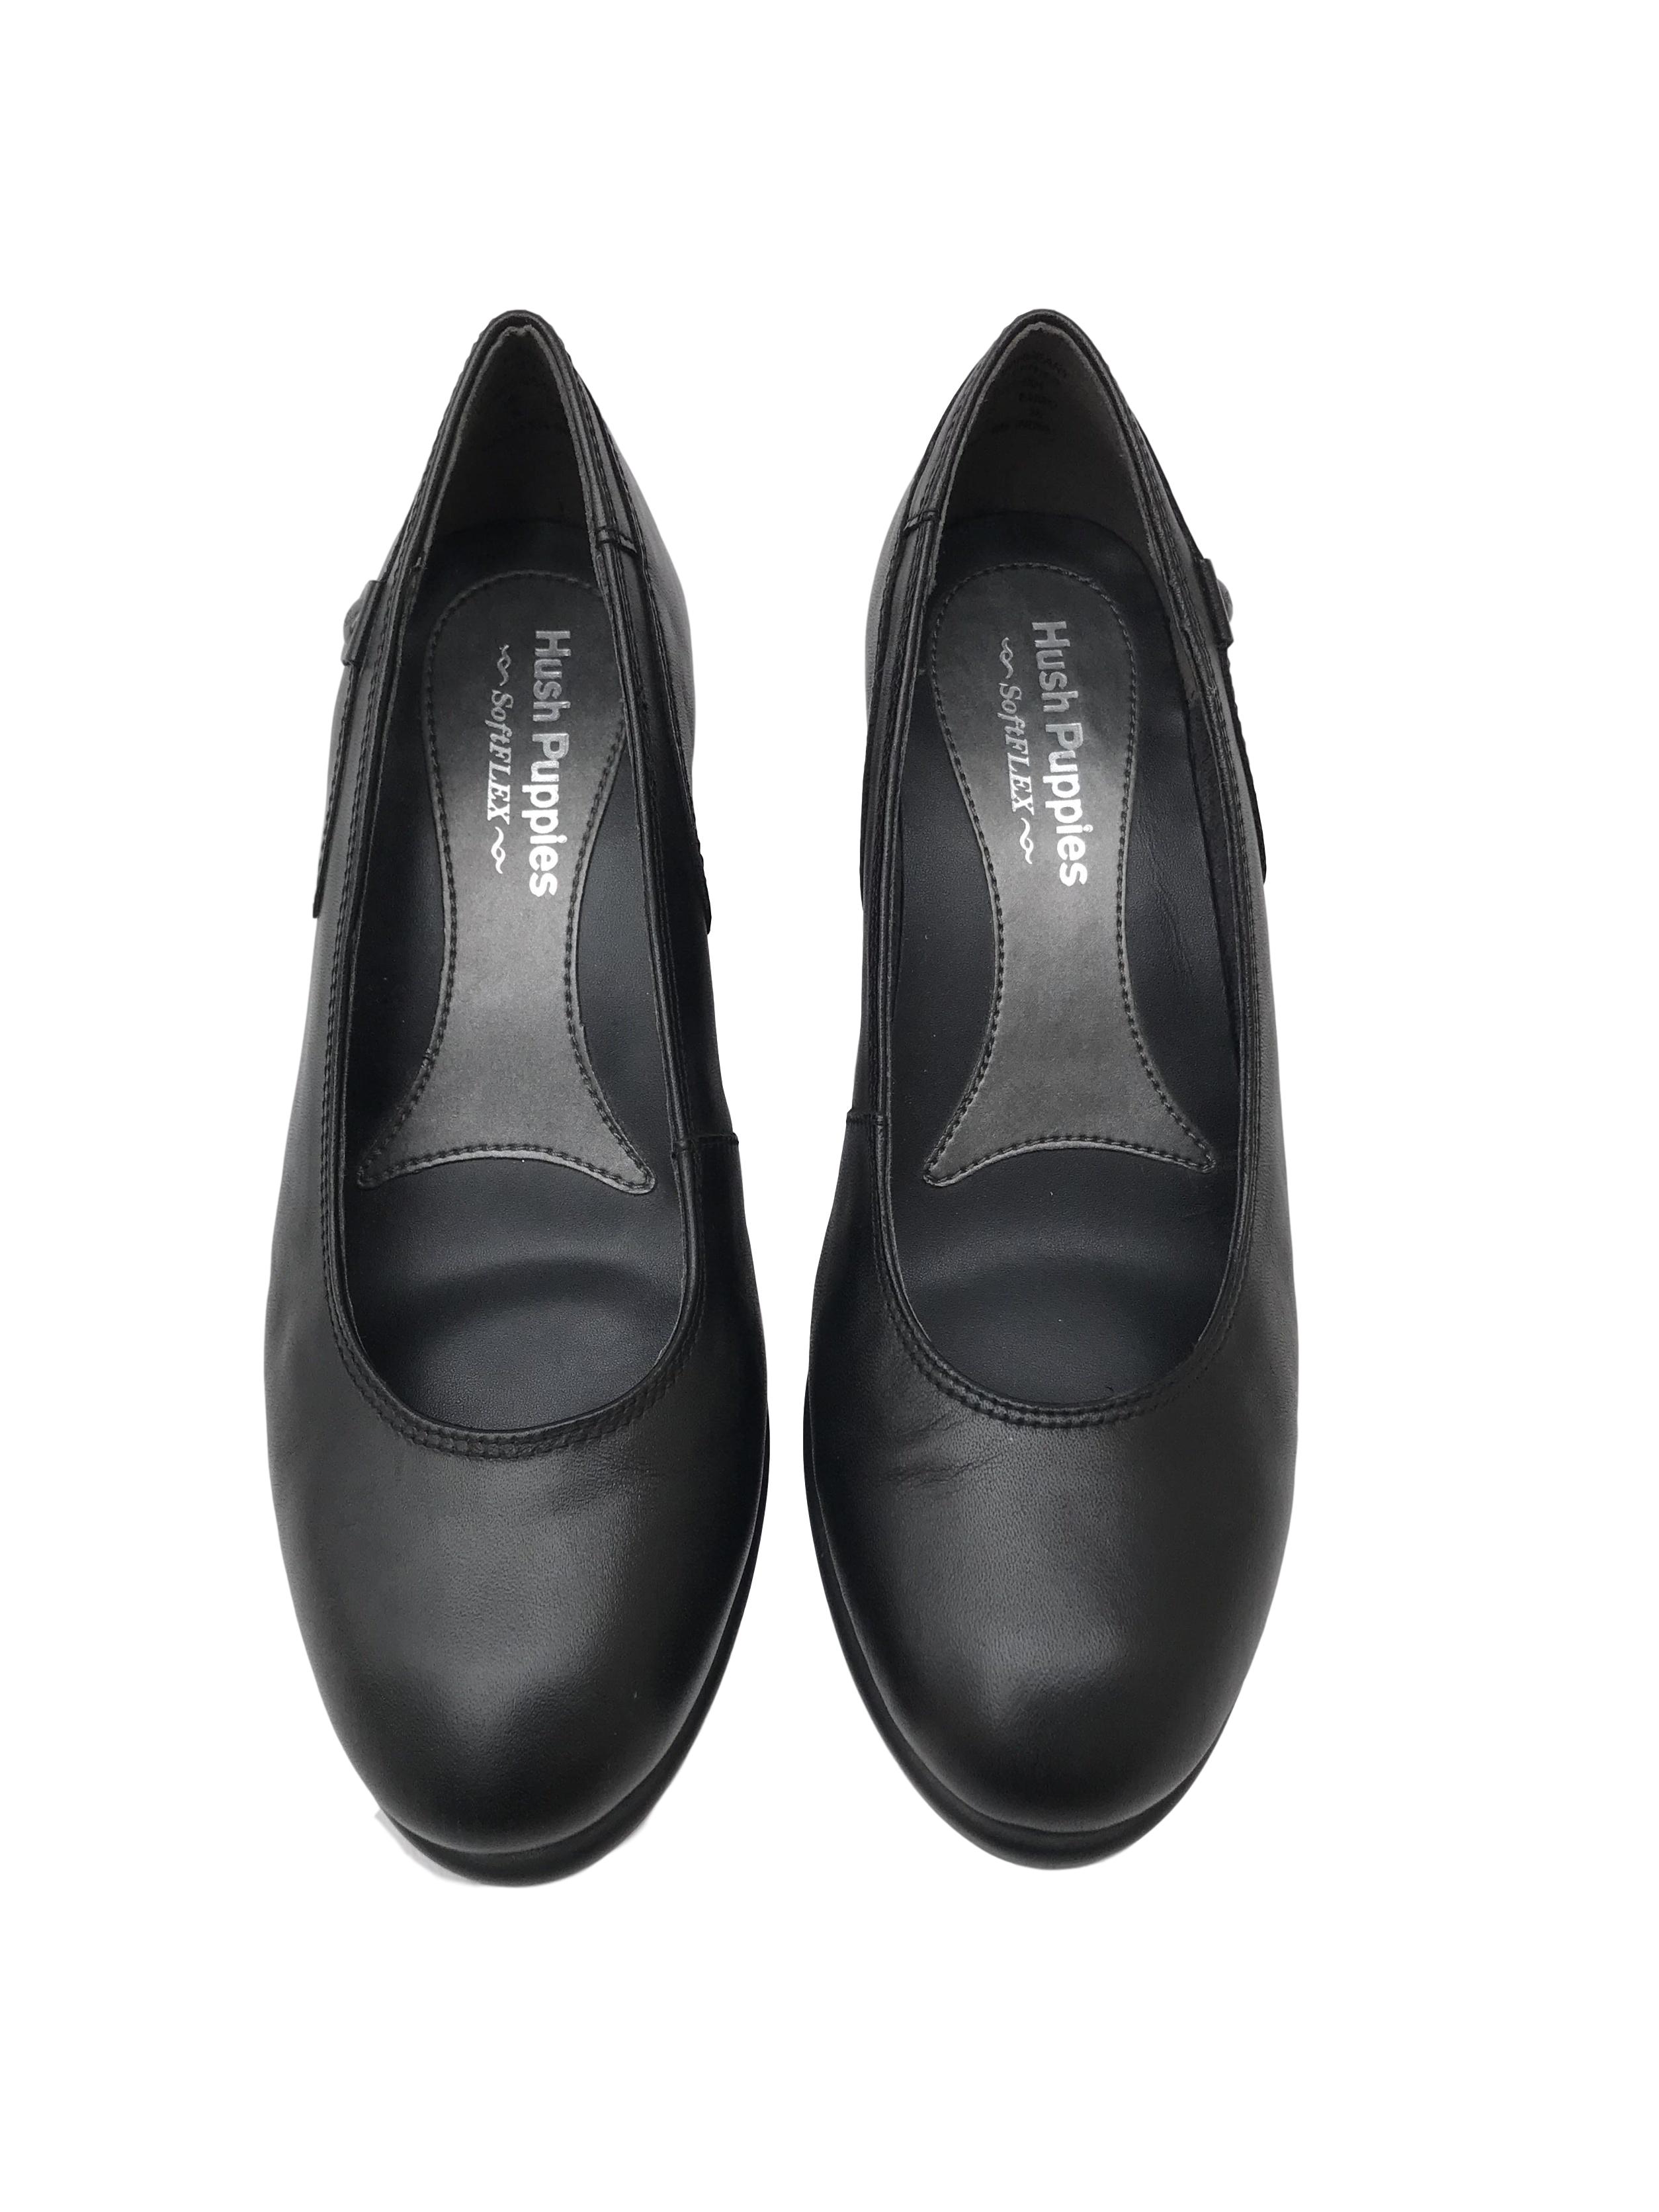 Zapatos Puppies de cuero negro, taco cuña 7cm, comfort Estado 9/10. Precio original S/ 250 | Las